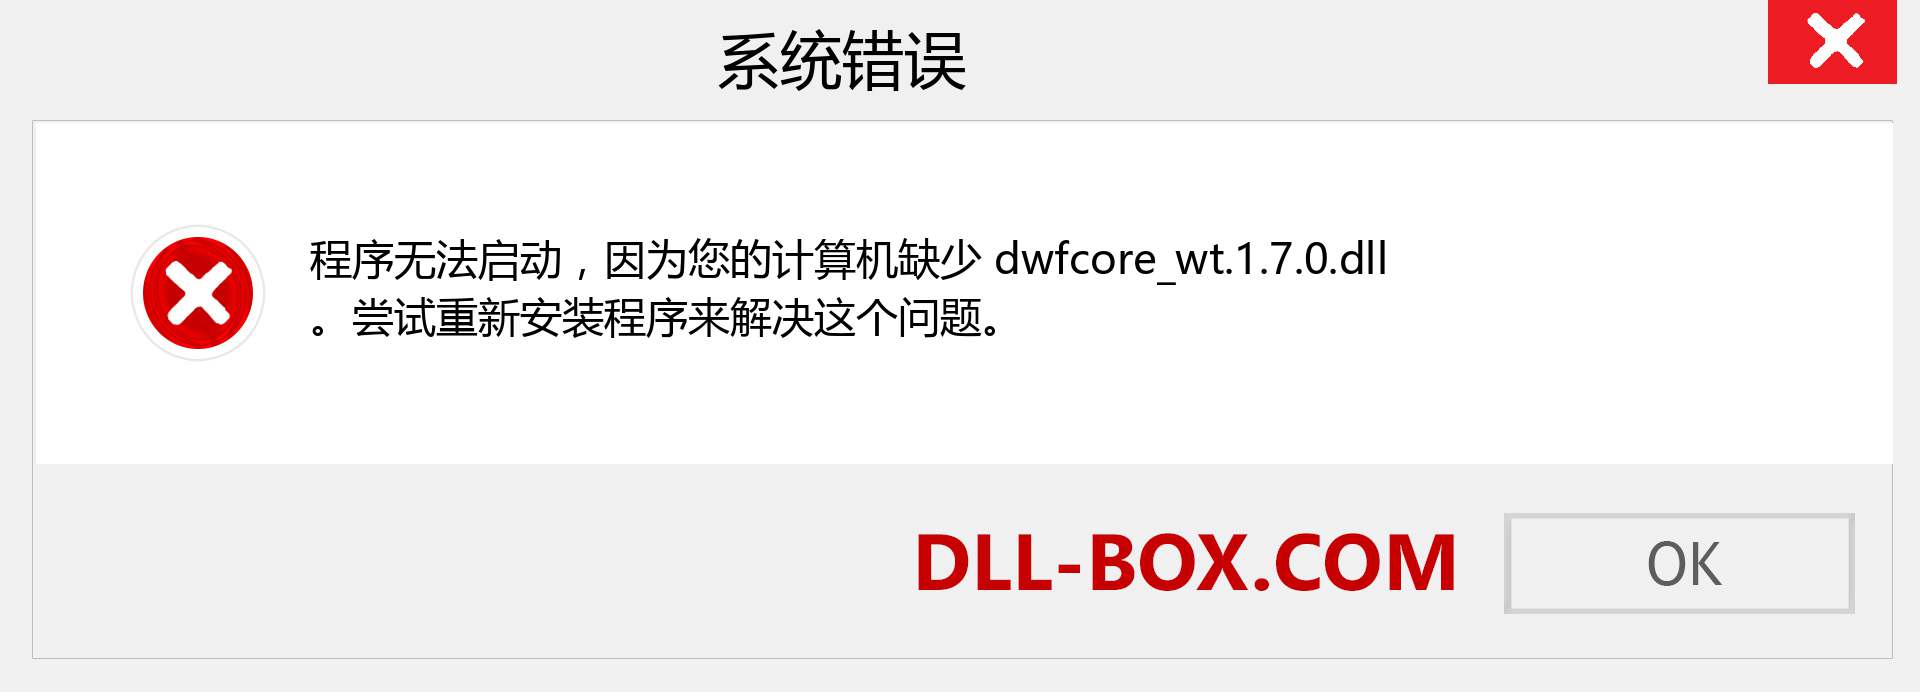 dwfcore_wt.1.7.0.dll 文件丢失？。 适用于 Windows 7、8、10 的下载 - 修复 Windows、照片、图像上的 dwfcore_wt.1.7.0 dll 丢失错误